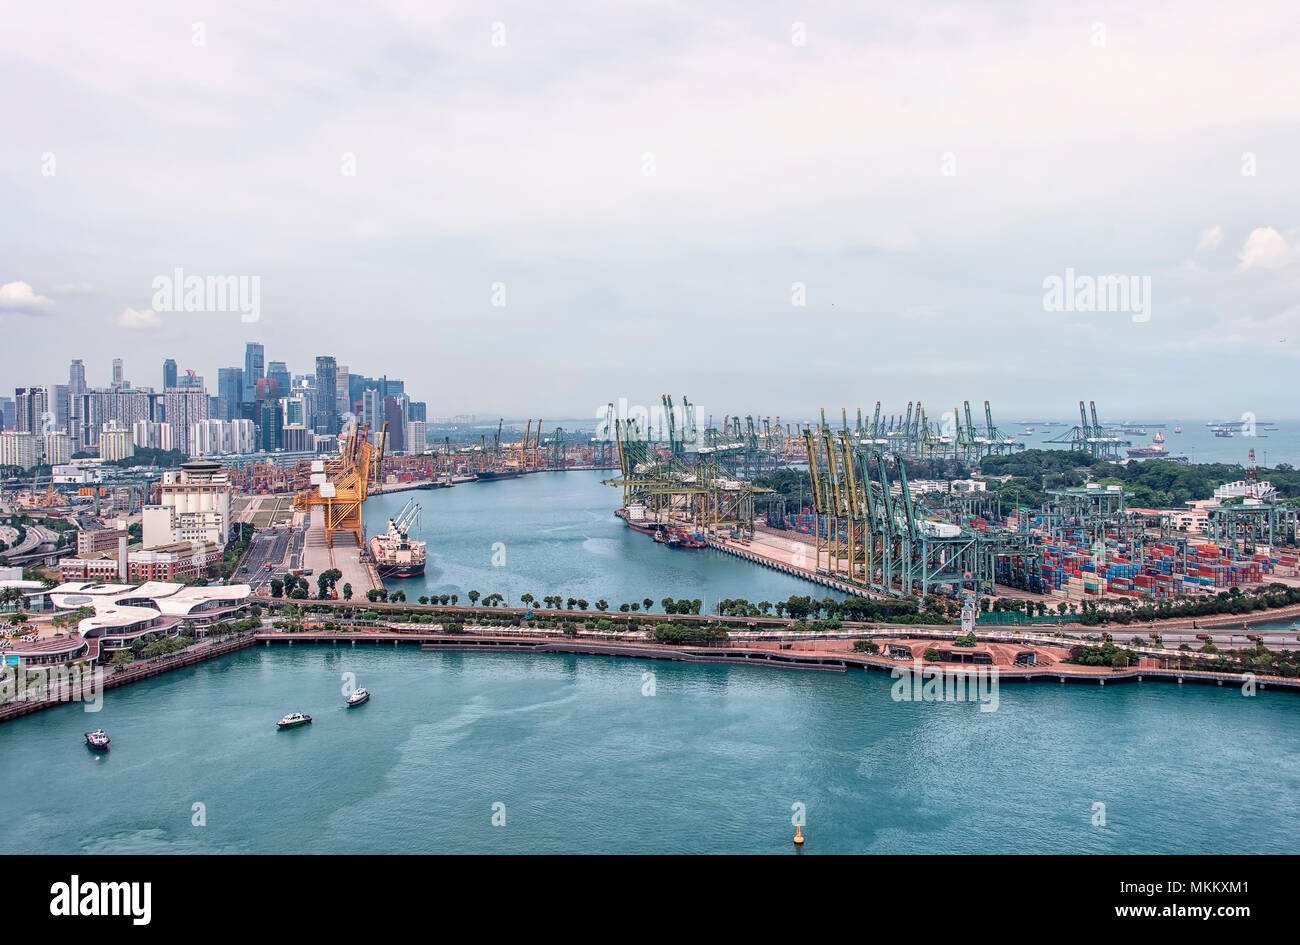 Vista aérea del puerto comercial en Singapor. Es el puerto más concurrido del mundo en términos de tonelaje total de envío. Foto de stock